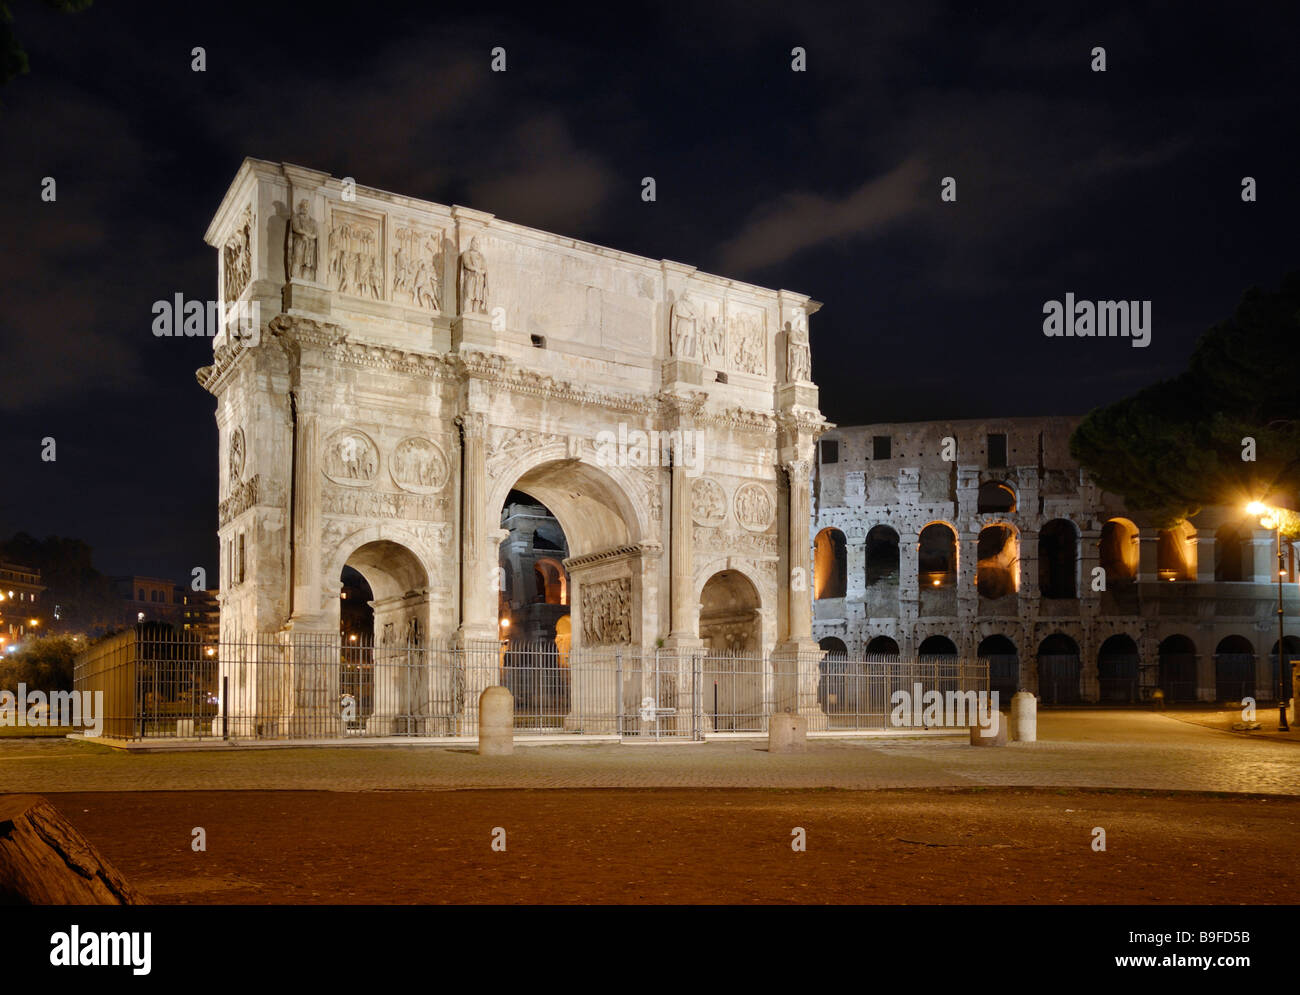 Arco Triunfal iluminado por la noche, el Arco de Constantino, Roma, Lacio, Italia Foto de stock